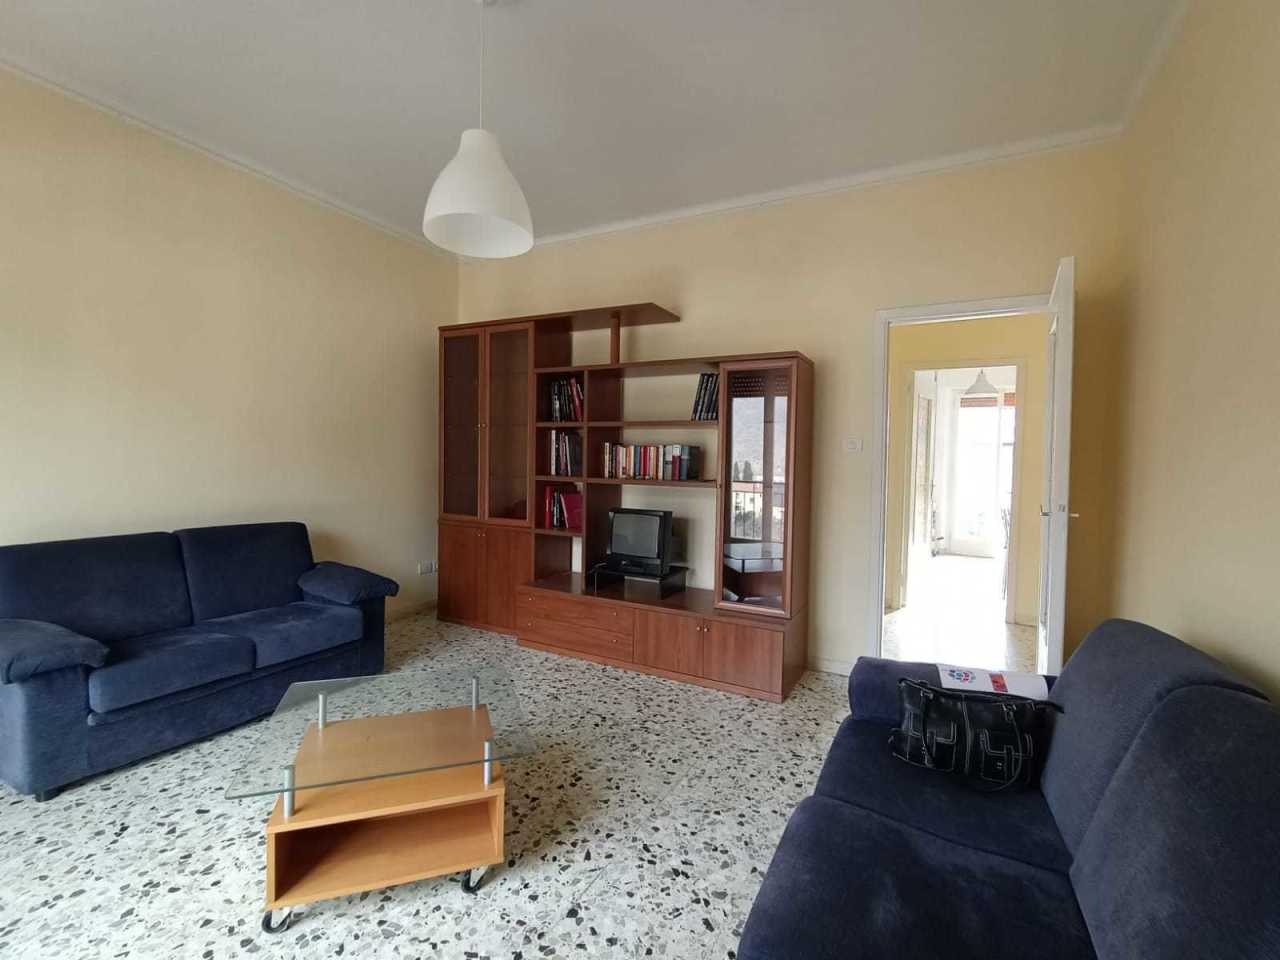 Appartamento in affitto a Fivizzano, 6 locali, prezzo € 450 | PortaleAgenzieImmobiliari.it